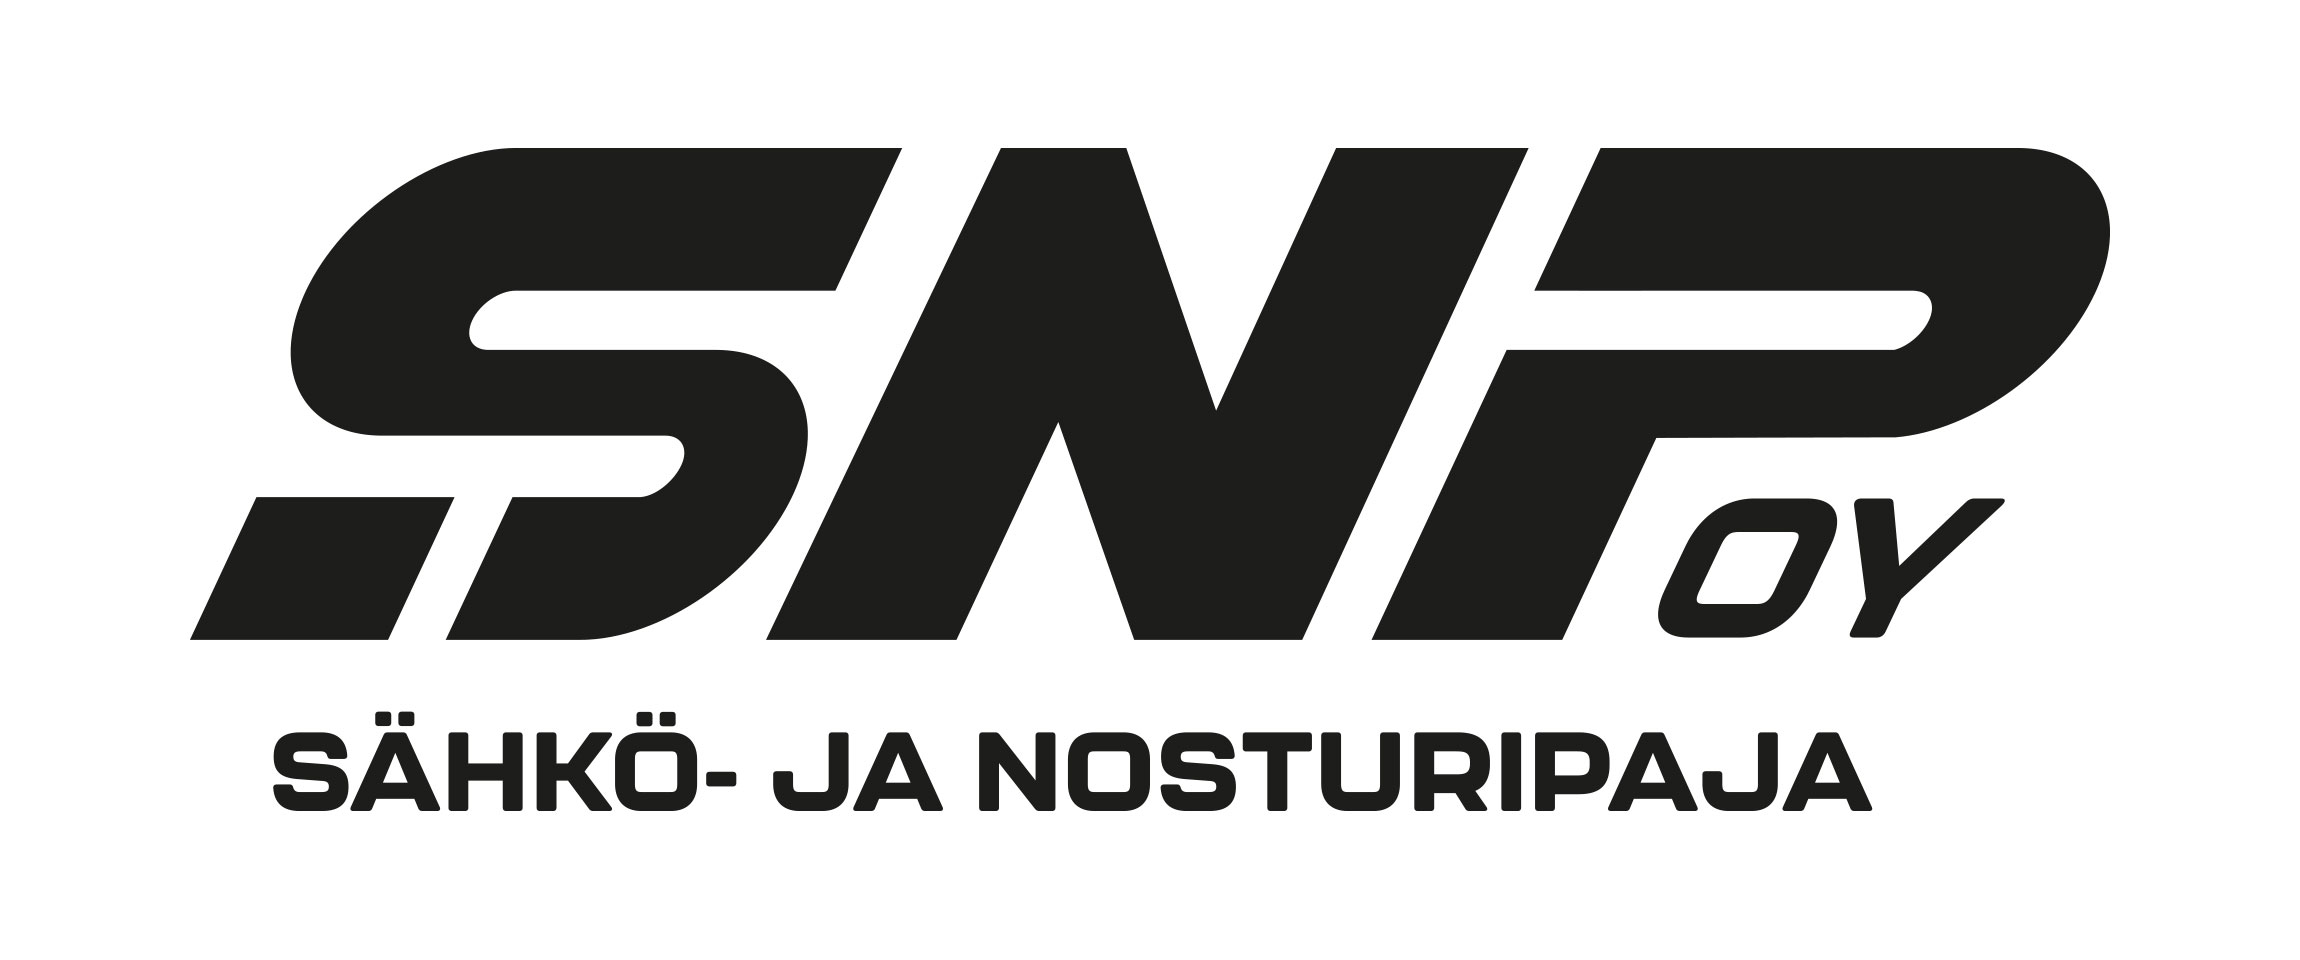 SNP I Sähkö- ja nosturipaja